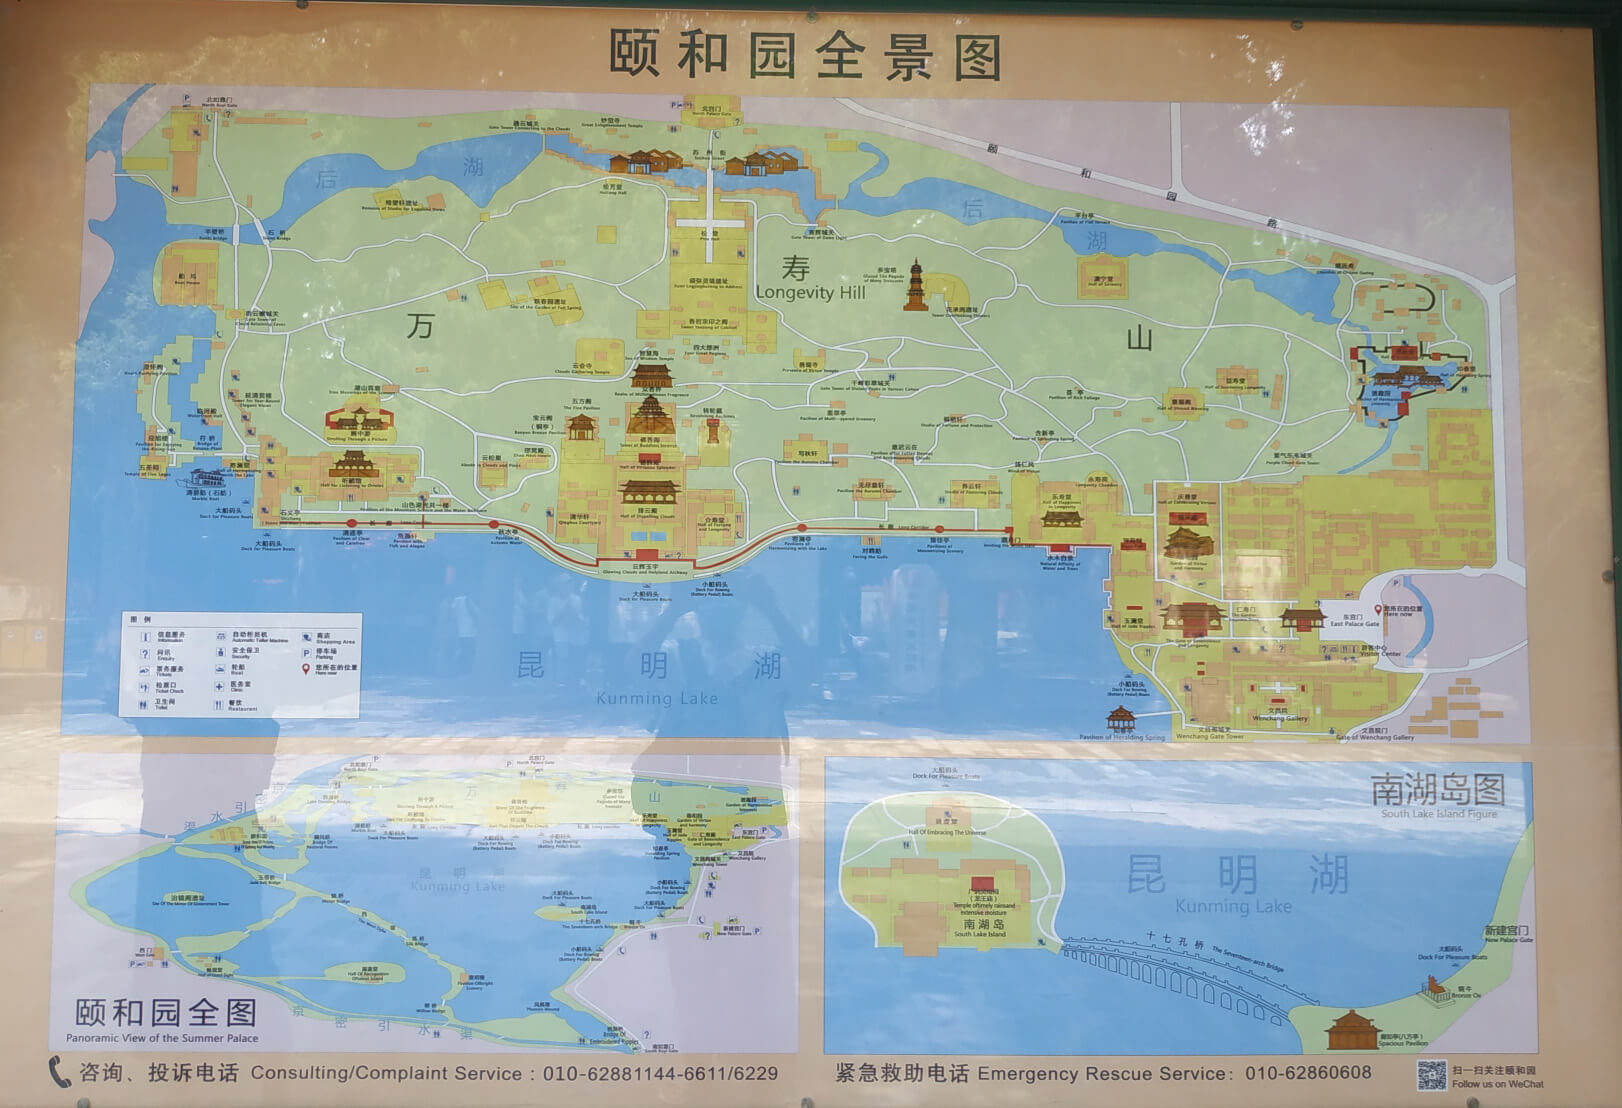 BeiJing Summer Palace Tourist Map